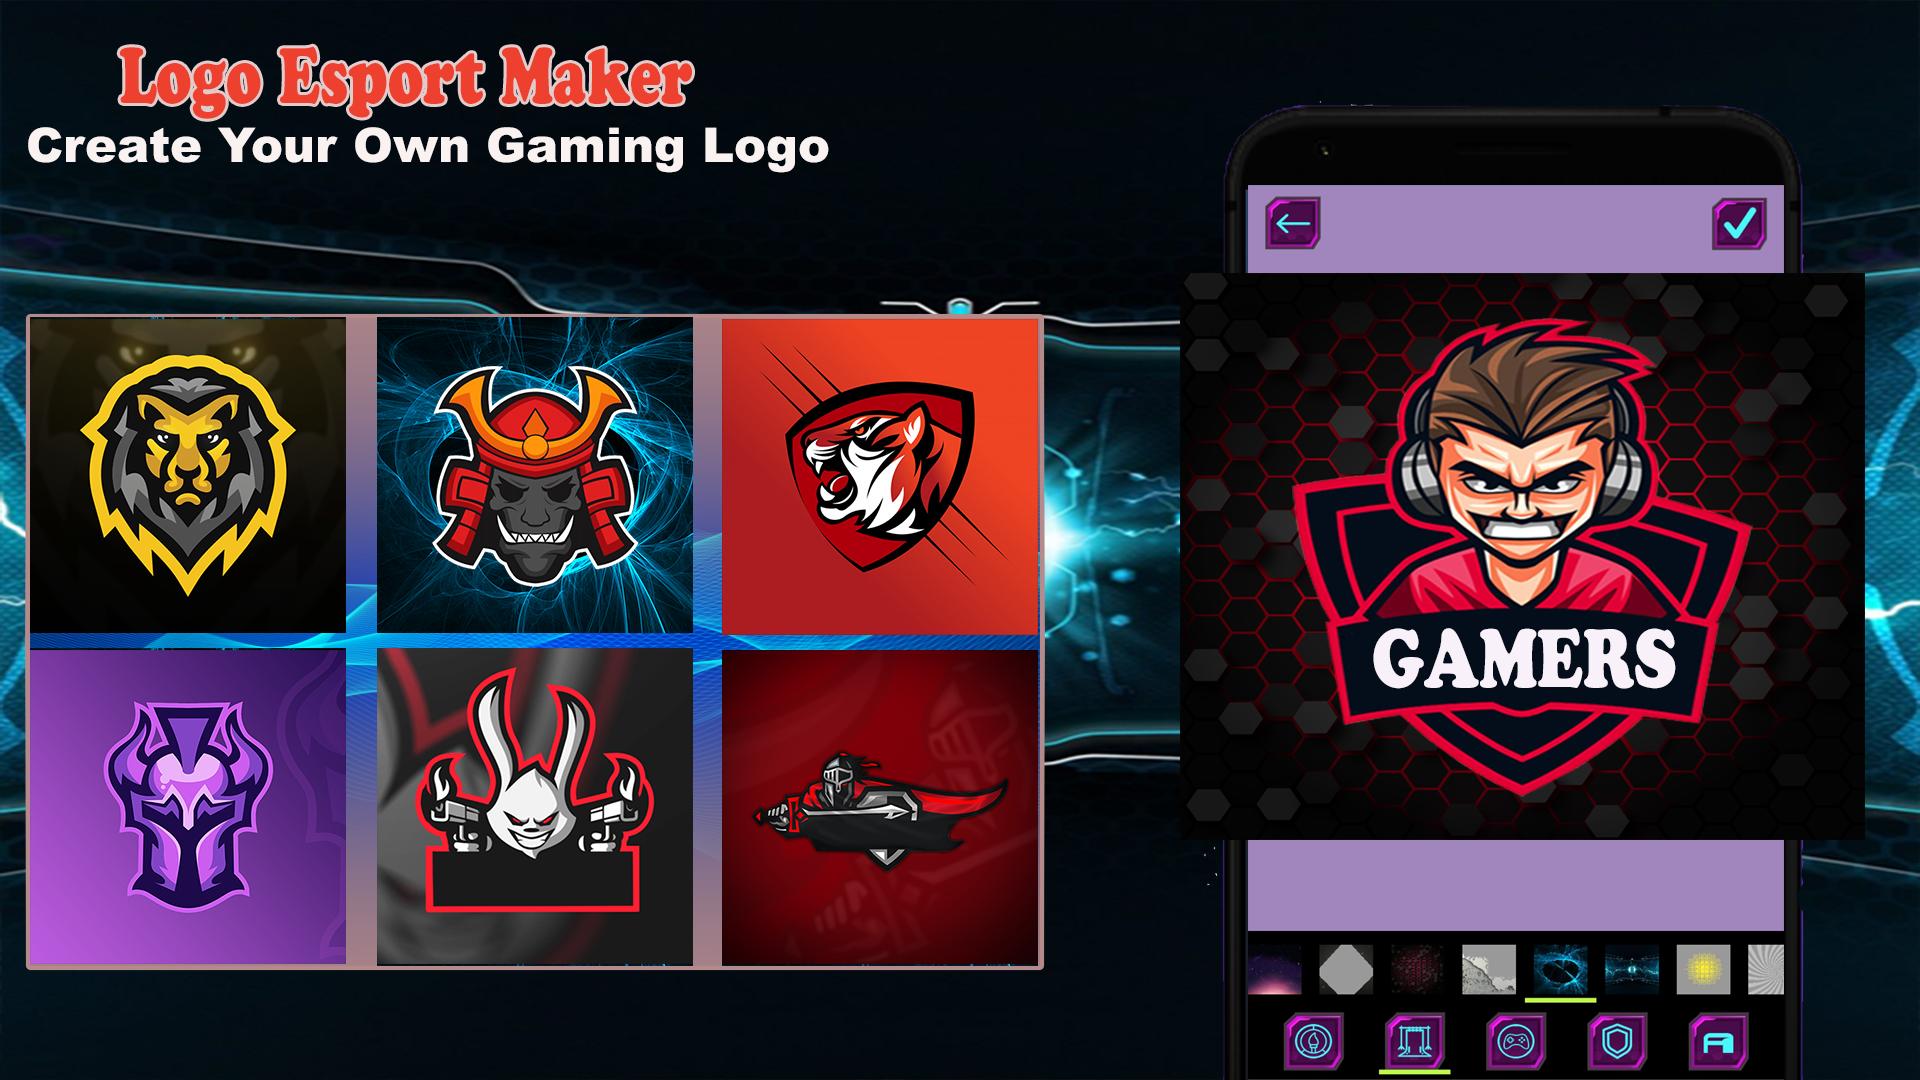 Ứng dụng Logo Esport Maker để tạo logo game mới: Bạn đang có dự định phát triển của riêng mình một trò chơi? Logo Esport Maker sẽ giúp bạn tạo ra những logo game độc đáo để thu hút người chơi. Với những công cụ đa dạng và dễ dàng sử dụng, bạn hoàn toàn có thể thiết kế được một logo ấn tượng cho trò chơi của mình.